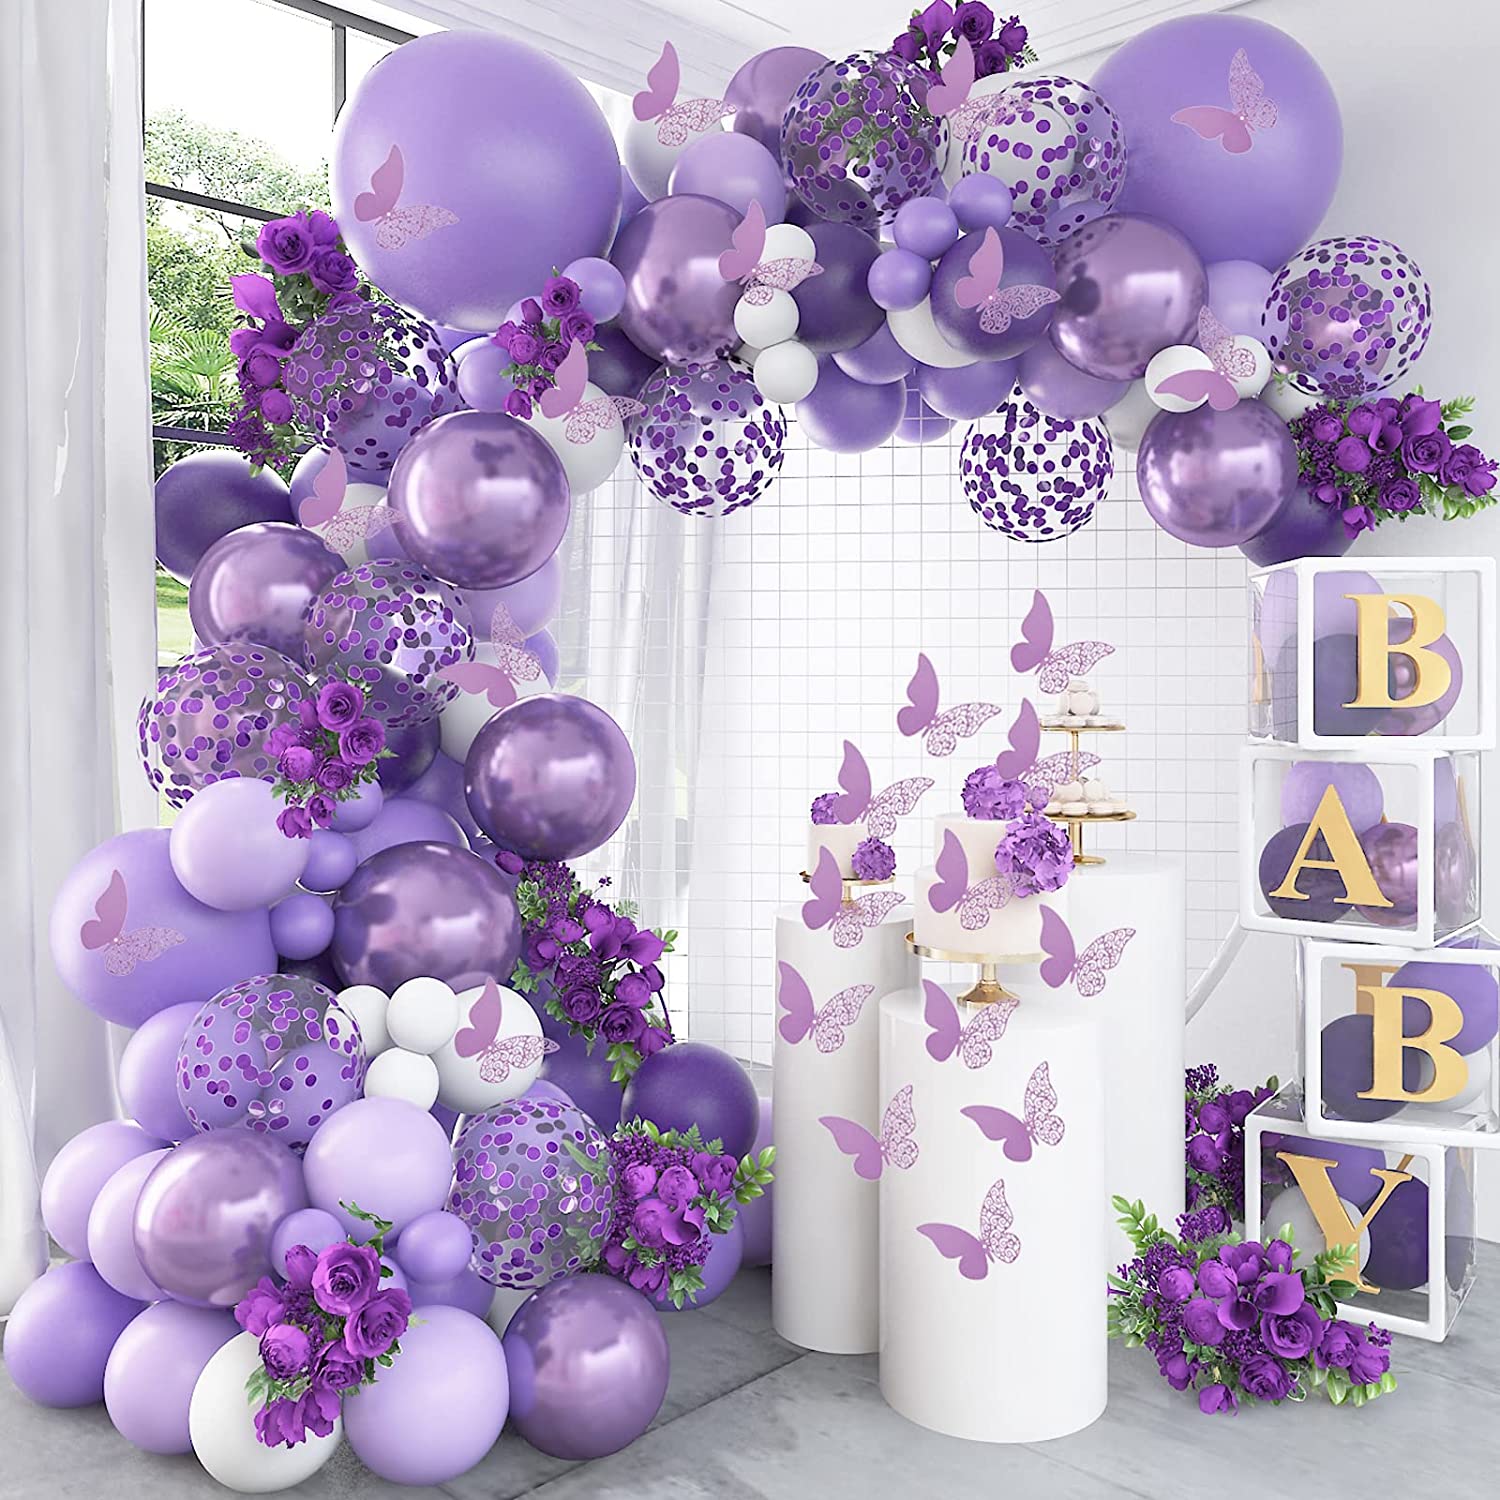 金属紫色紫色蝴蝶主题气球链套装宝宝生日派对婚礼装扮开业装饰